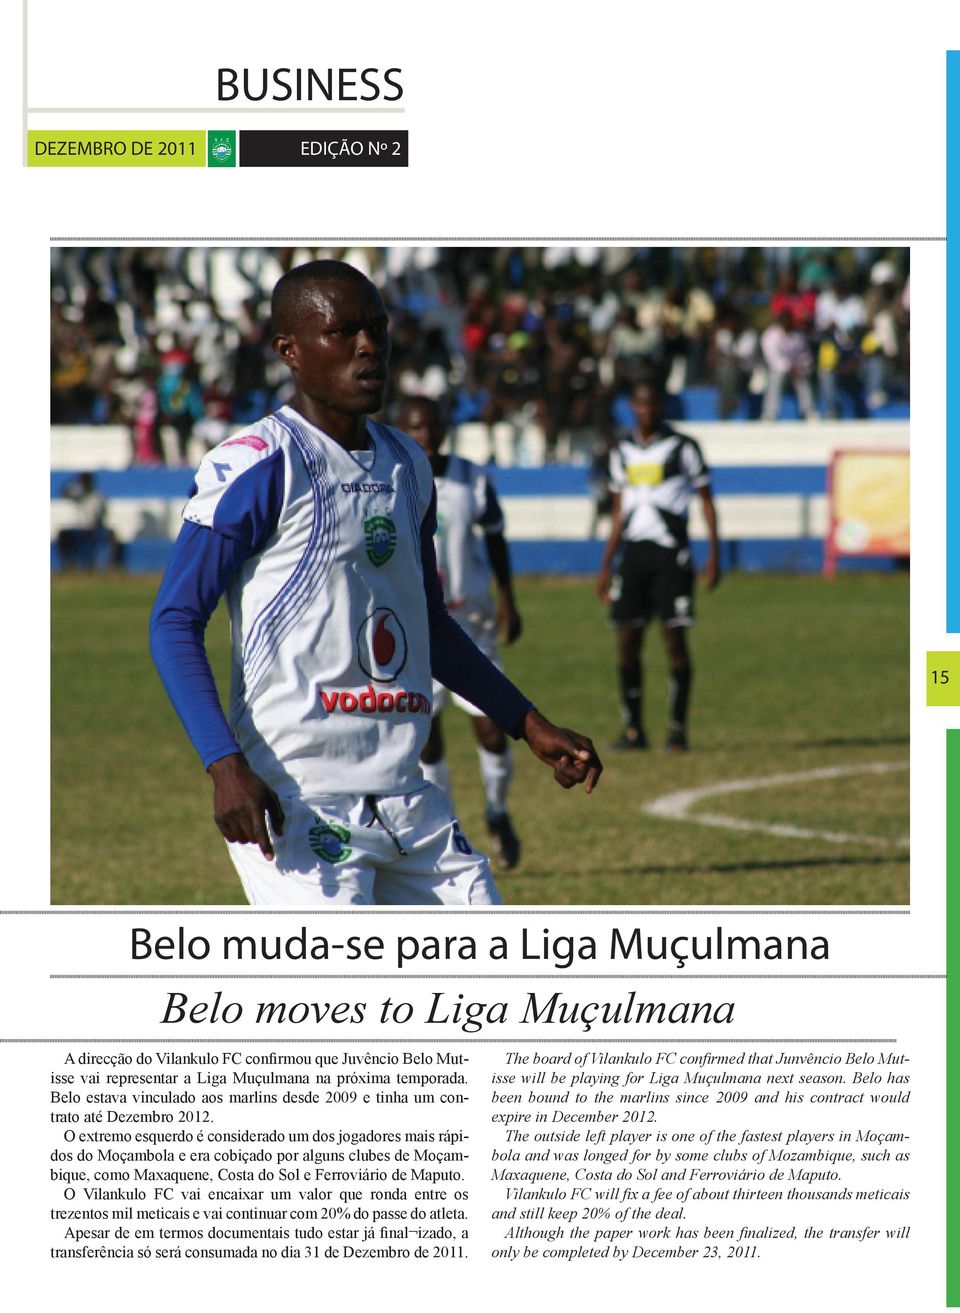 O extremo esquerdo é considerado um dos jogadores mais rápidos do Moçambola e era cobiçado por alguns clubes de Moçambique, como Maxaquene, Costa do Sol e Ferroviário de Maputo.